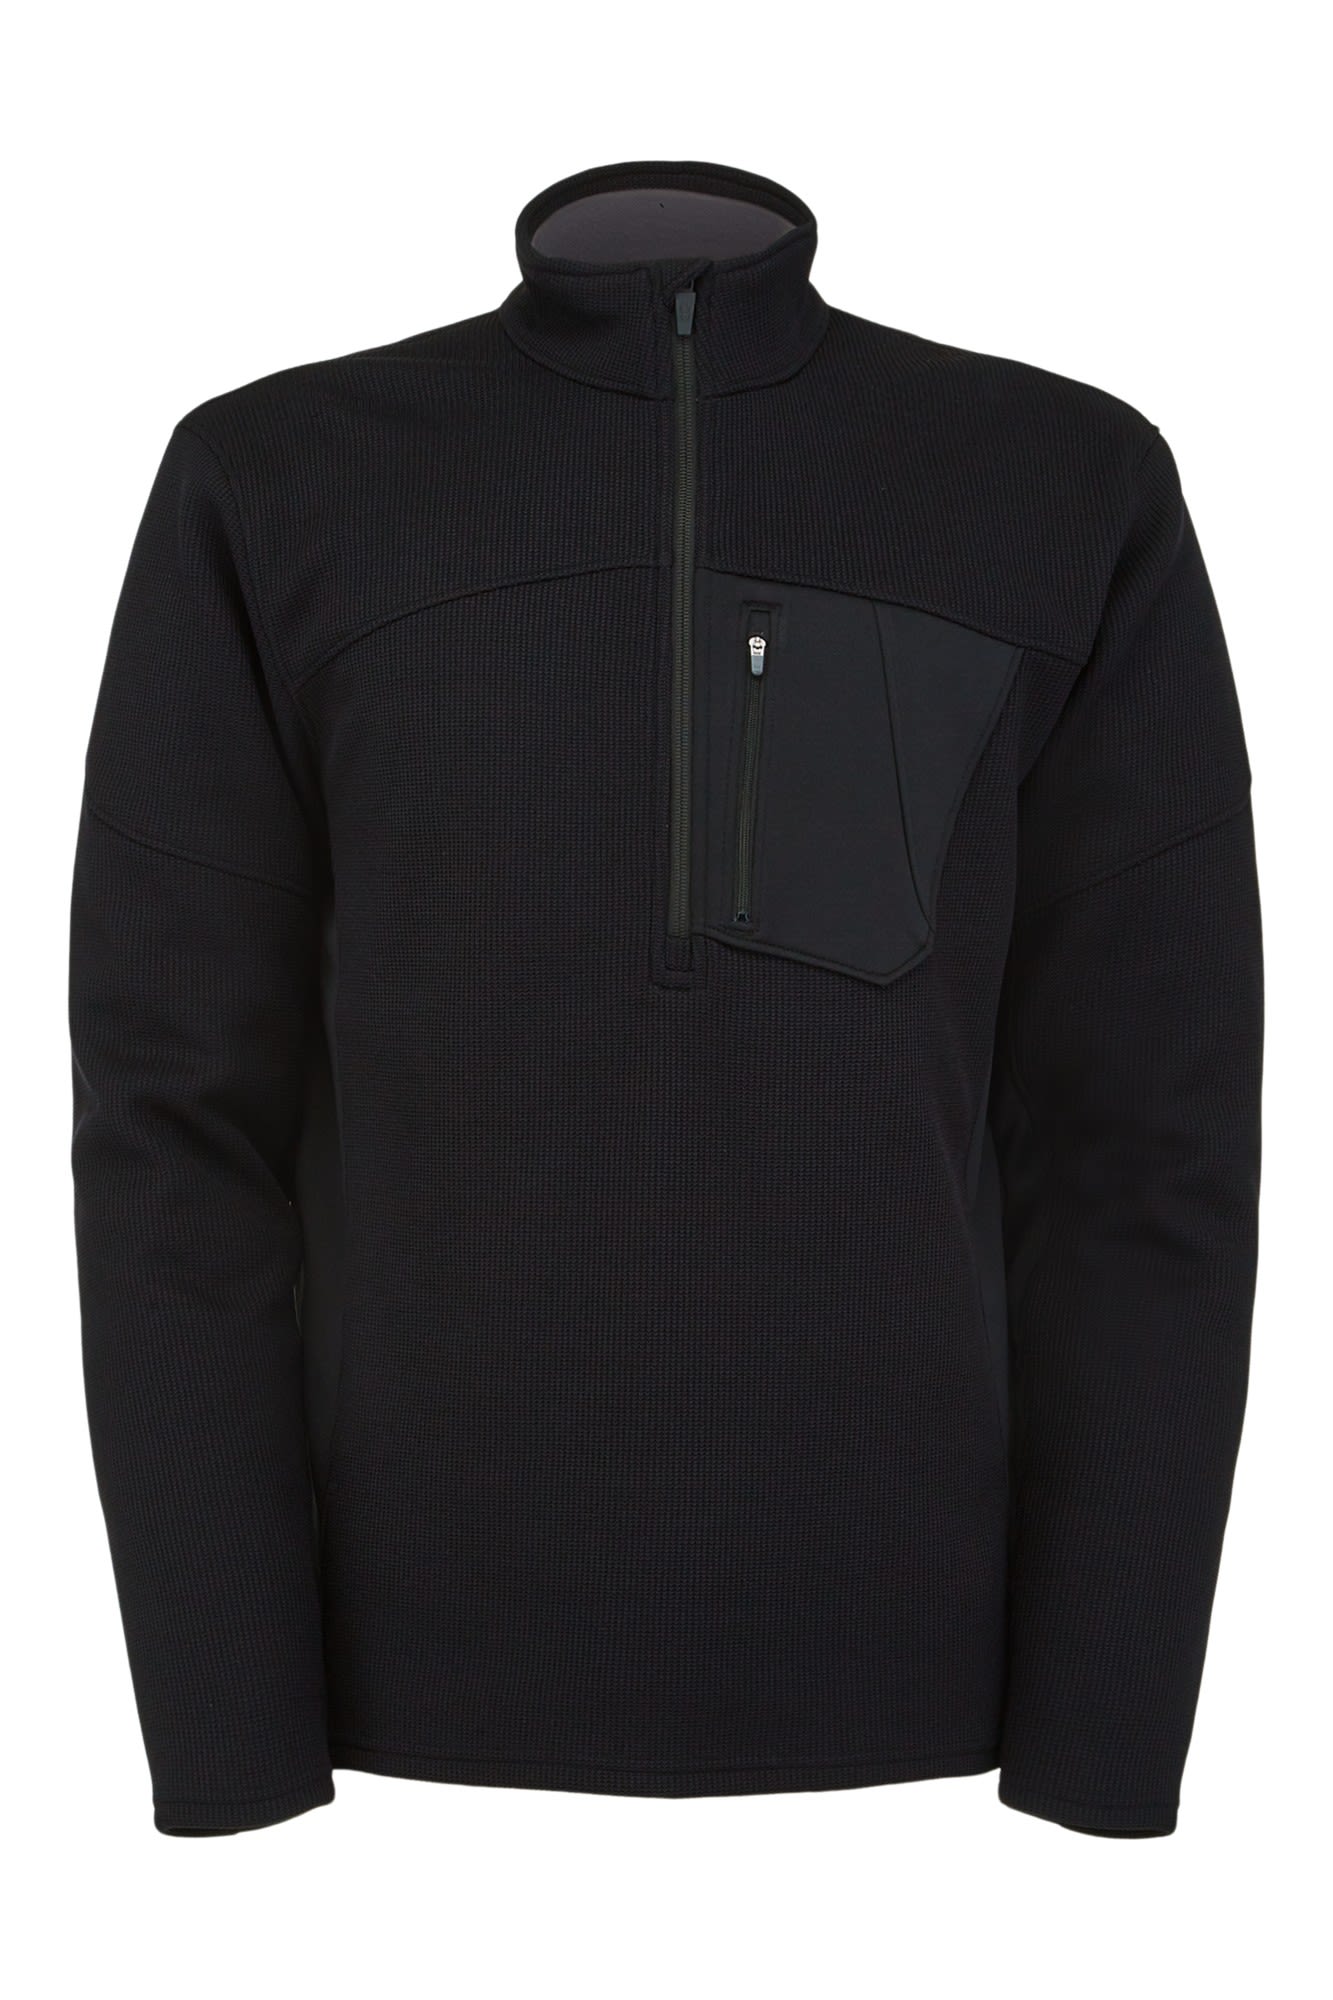 Spyder Bandit Half Zip Jacket Schwarz- Male Freizeitpullover- Grsse S - Farbe Black unter Spyder